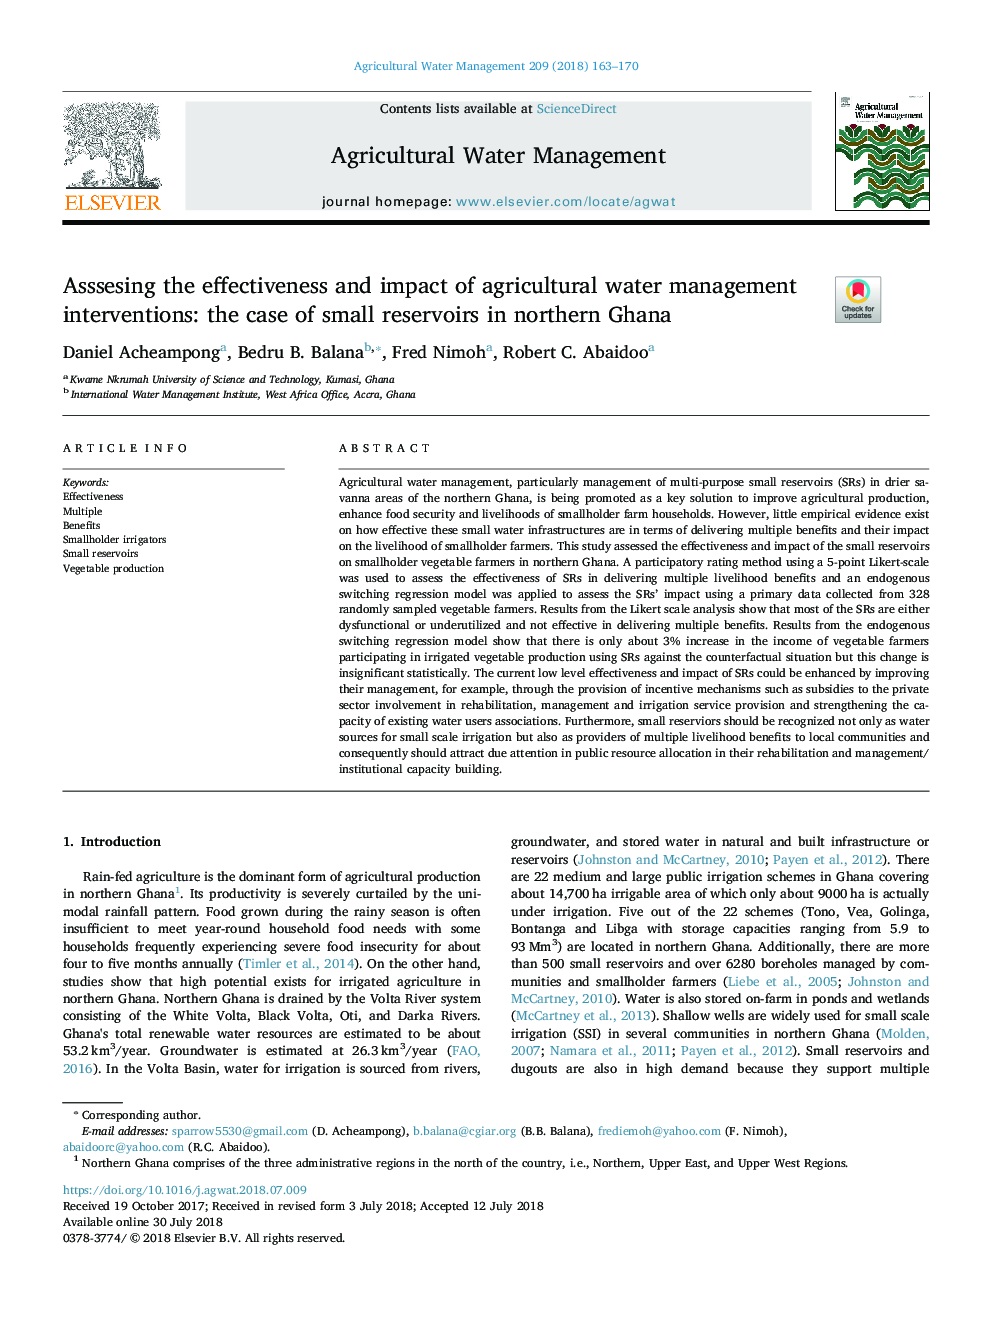 تأثیر مؤثر و تاثیر مداخلات مدیریت آب کشاورزی: ​​مورد مخازن کوچک در شمال غنا 